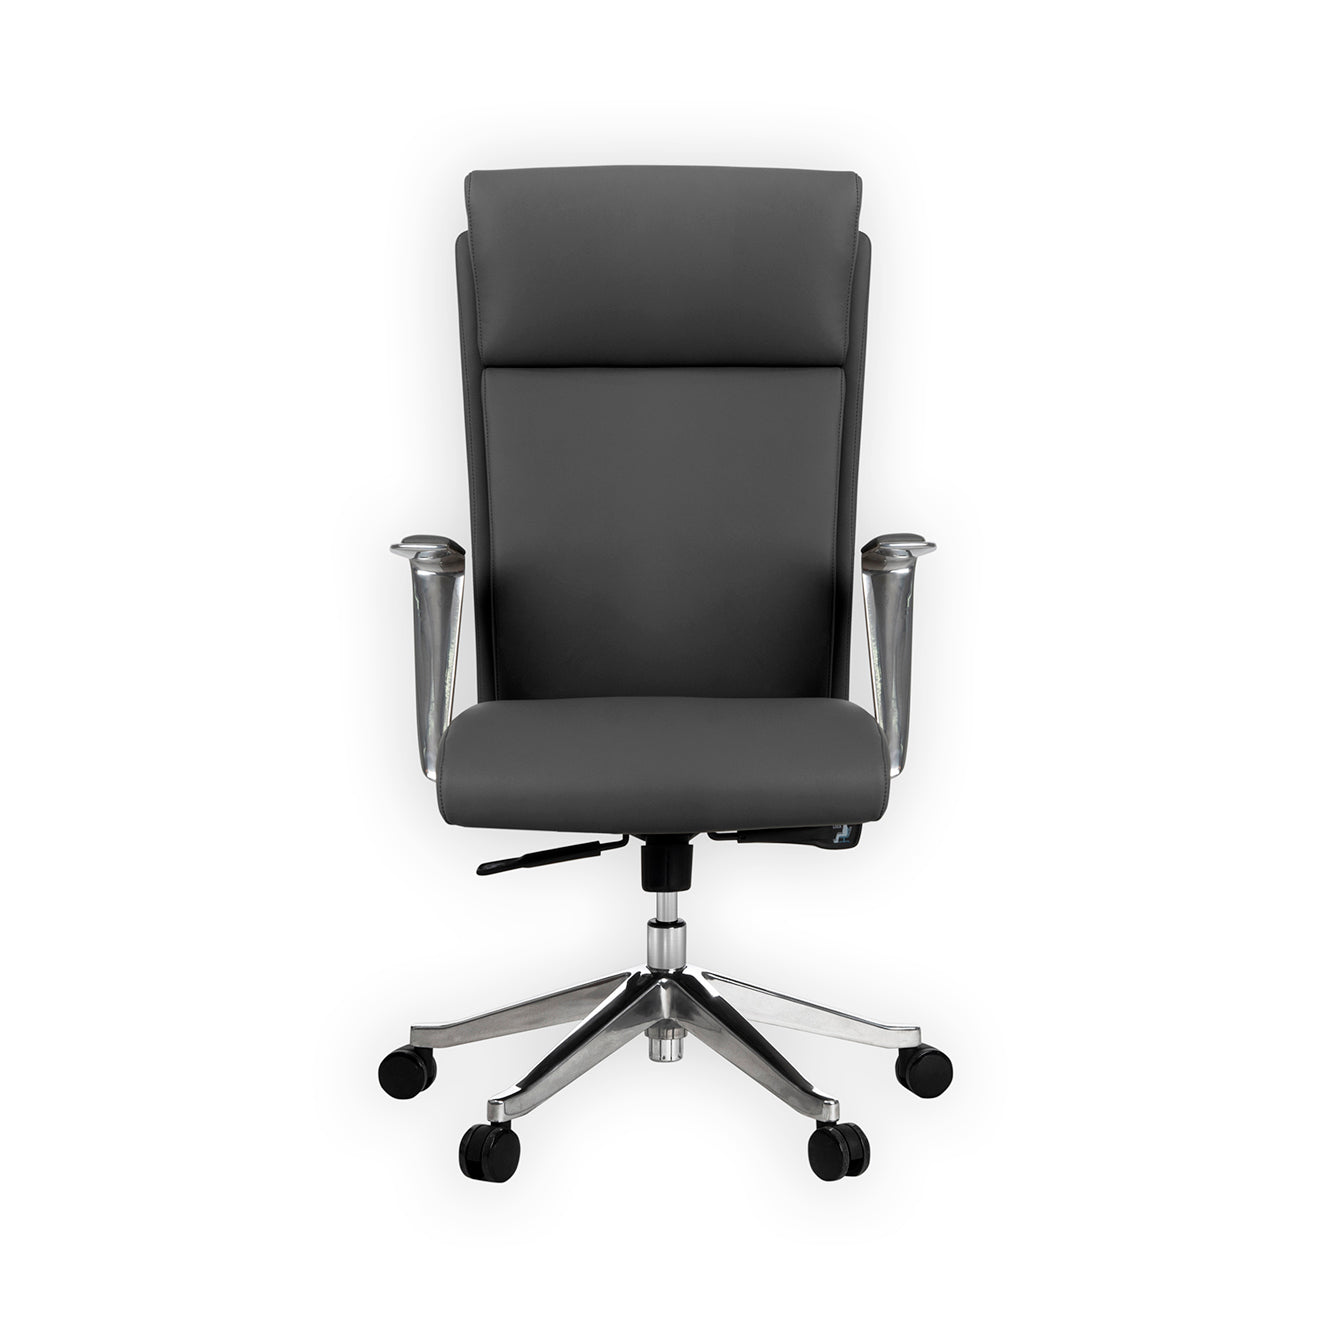 UJI Customer Chair - Dark Grey